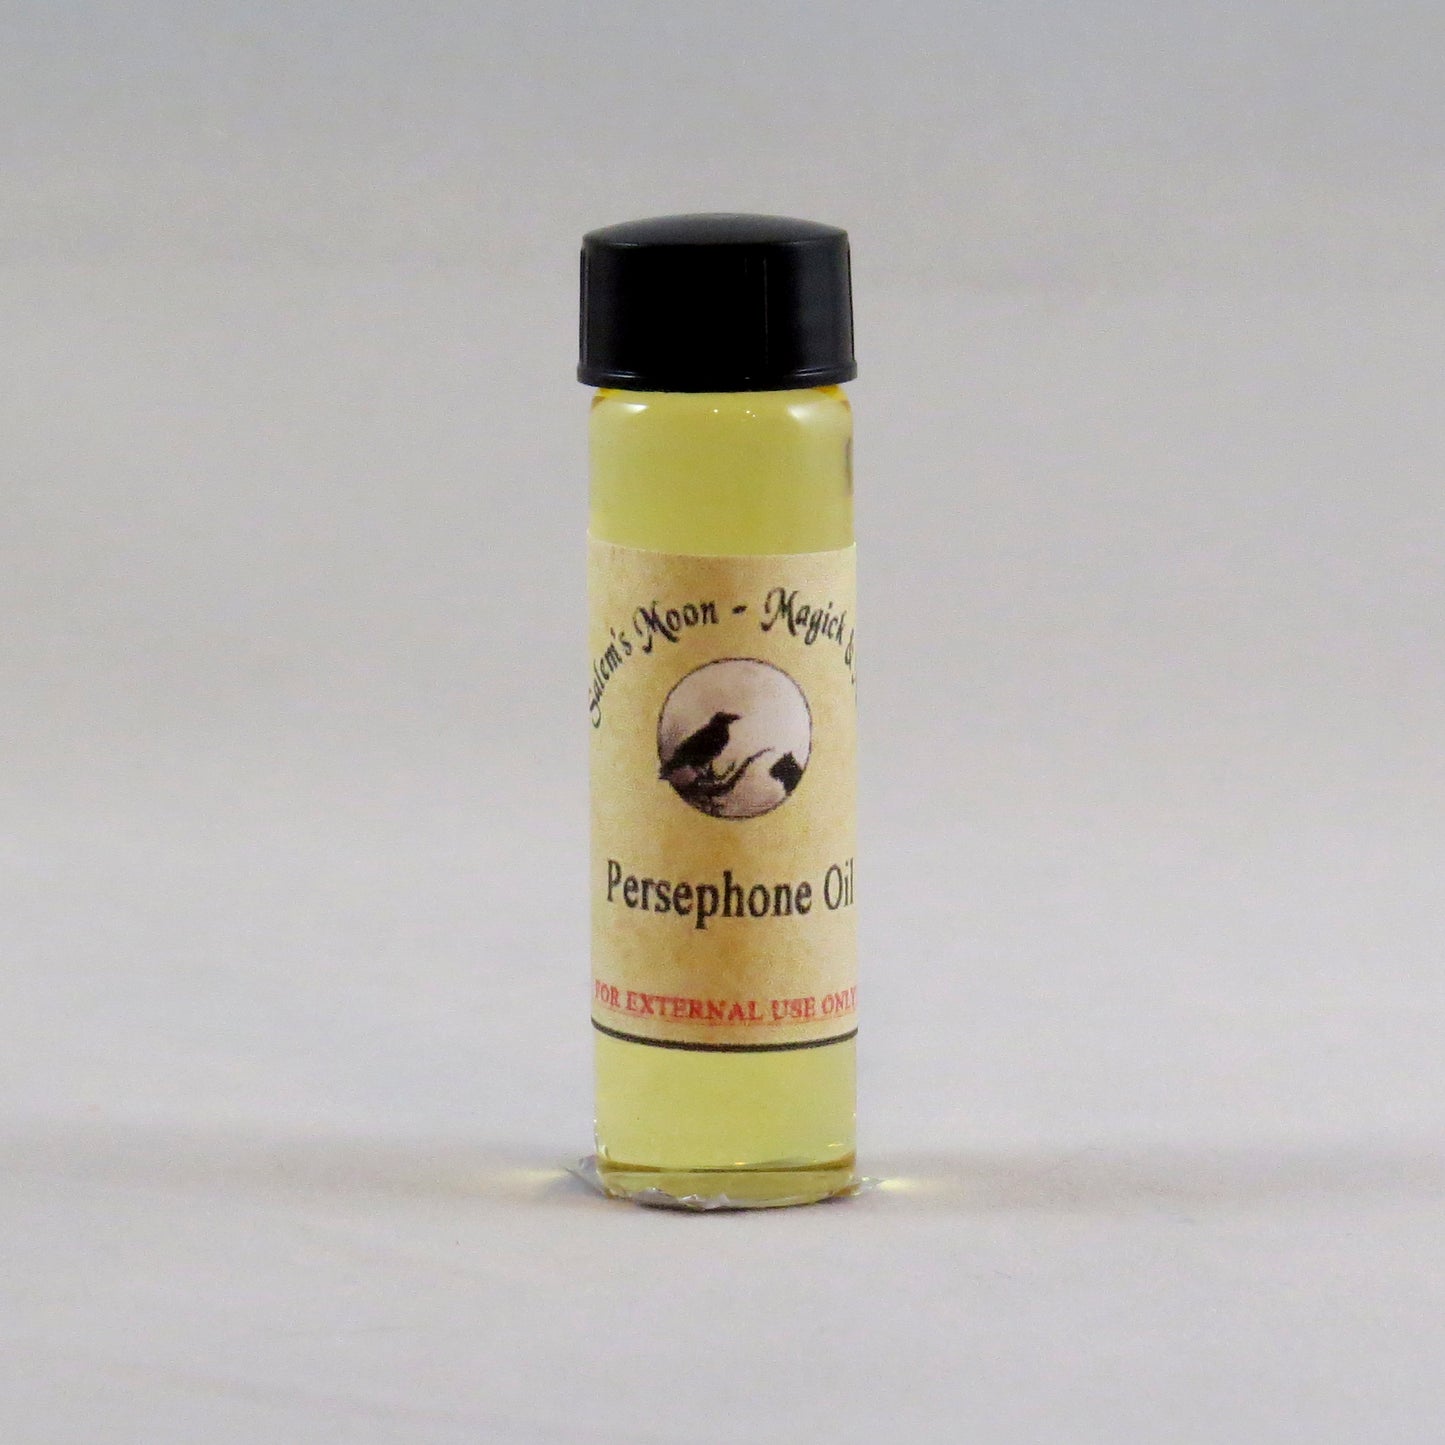 Persephone Oil